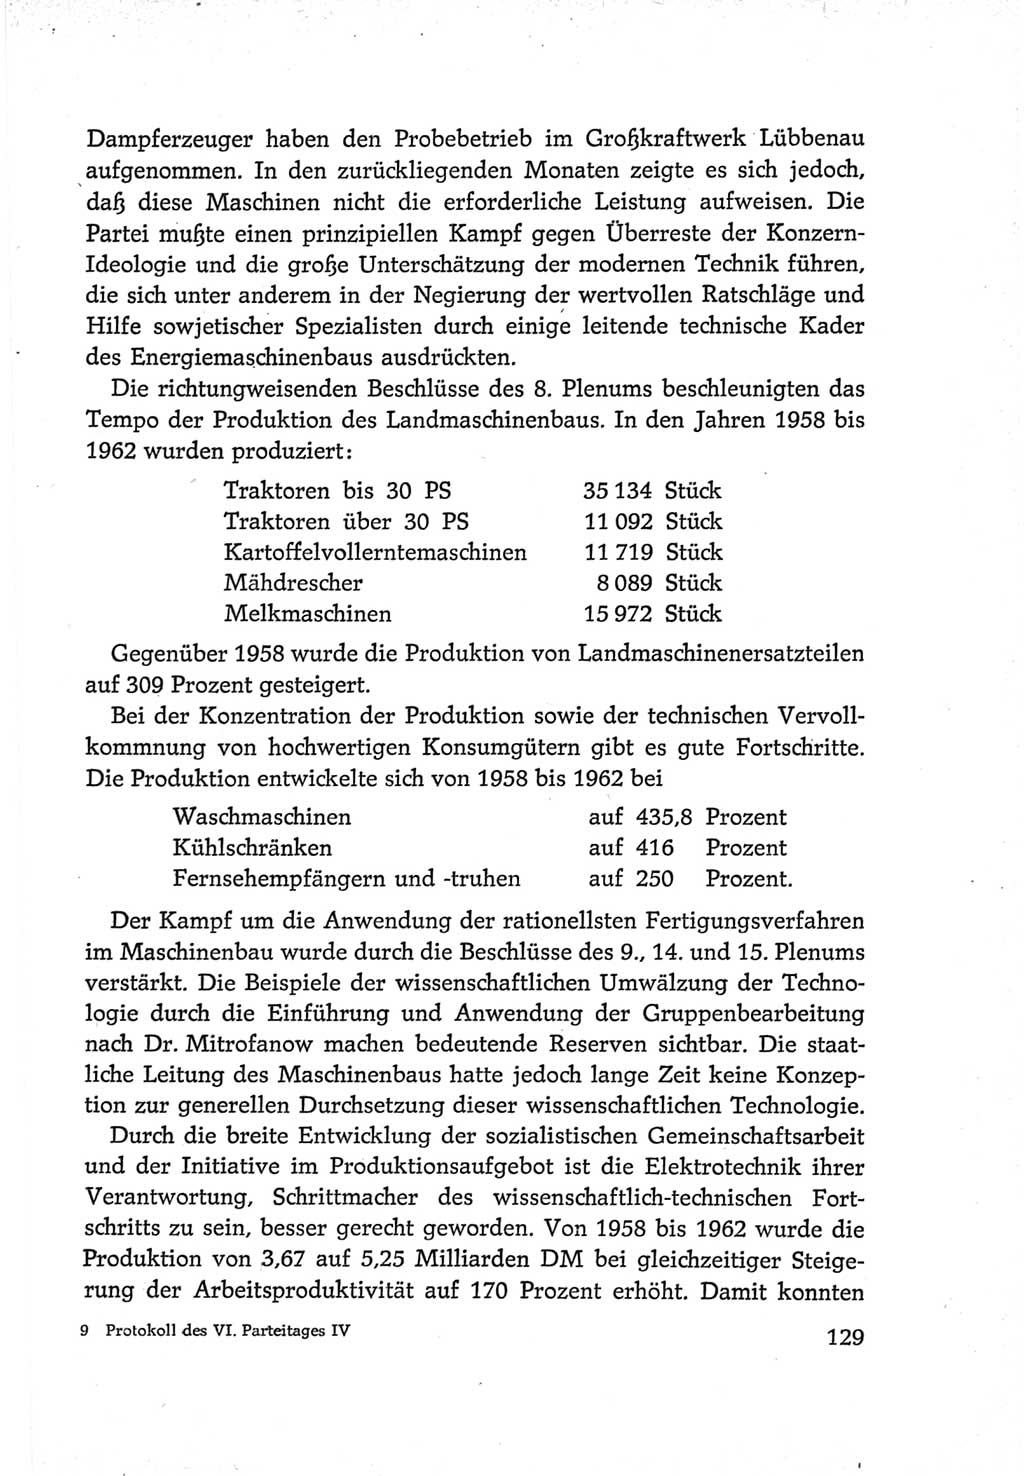 Protokoll der Verhandlungen des Ⅵ. Parteitages der Sozialistischen Einheitspartei Deutschlands (SED) [Deutsche Demokratische Republik (DDR)] 1963, Band Ⅳ, Seite 129 (Prot. Verh. Ⅵ. PT SED DDR 1963, Bd. Ⅳ, S. 129)